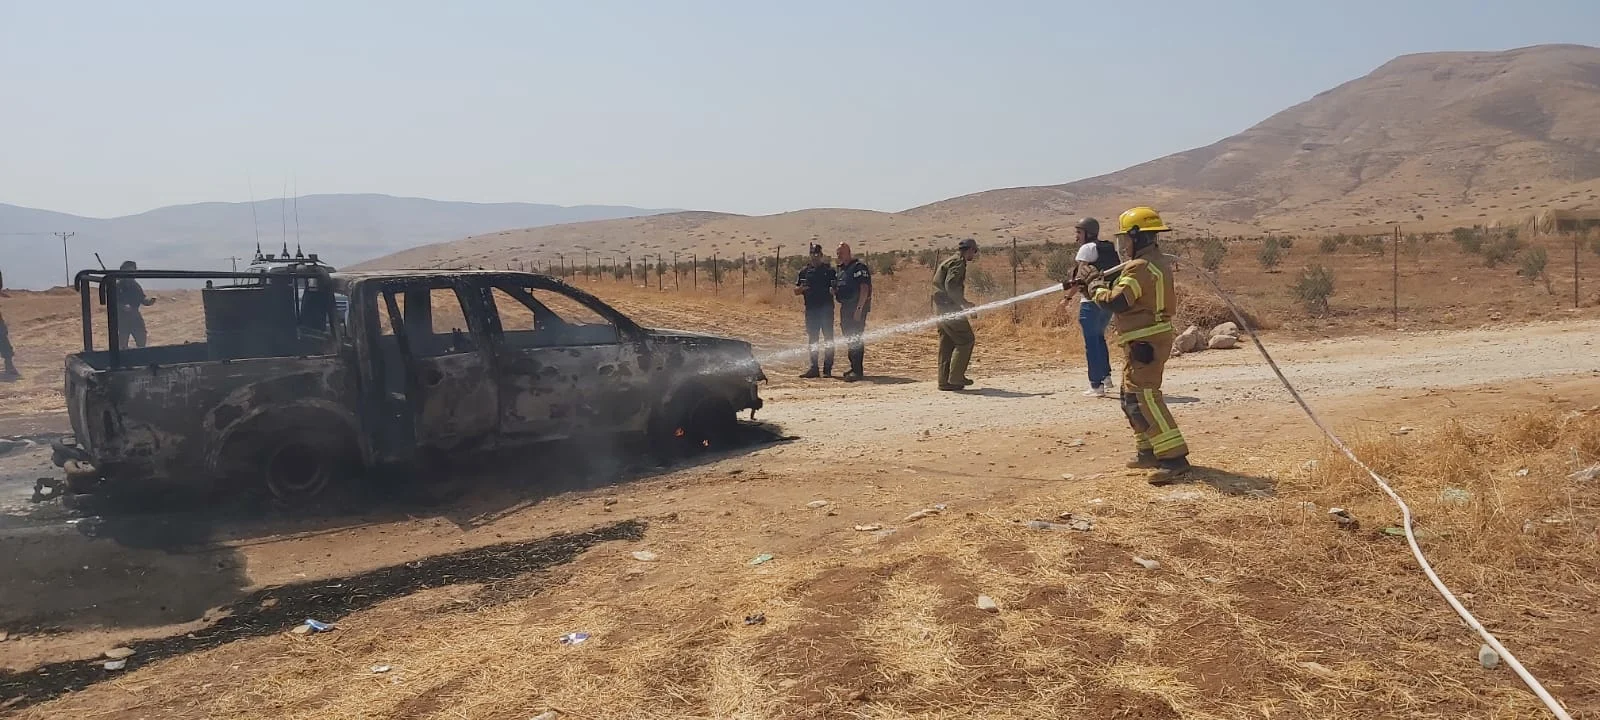 רכב המחבלים שביצעו את הפיגוע בבקעת הירדן